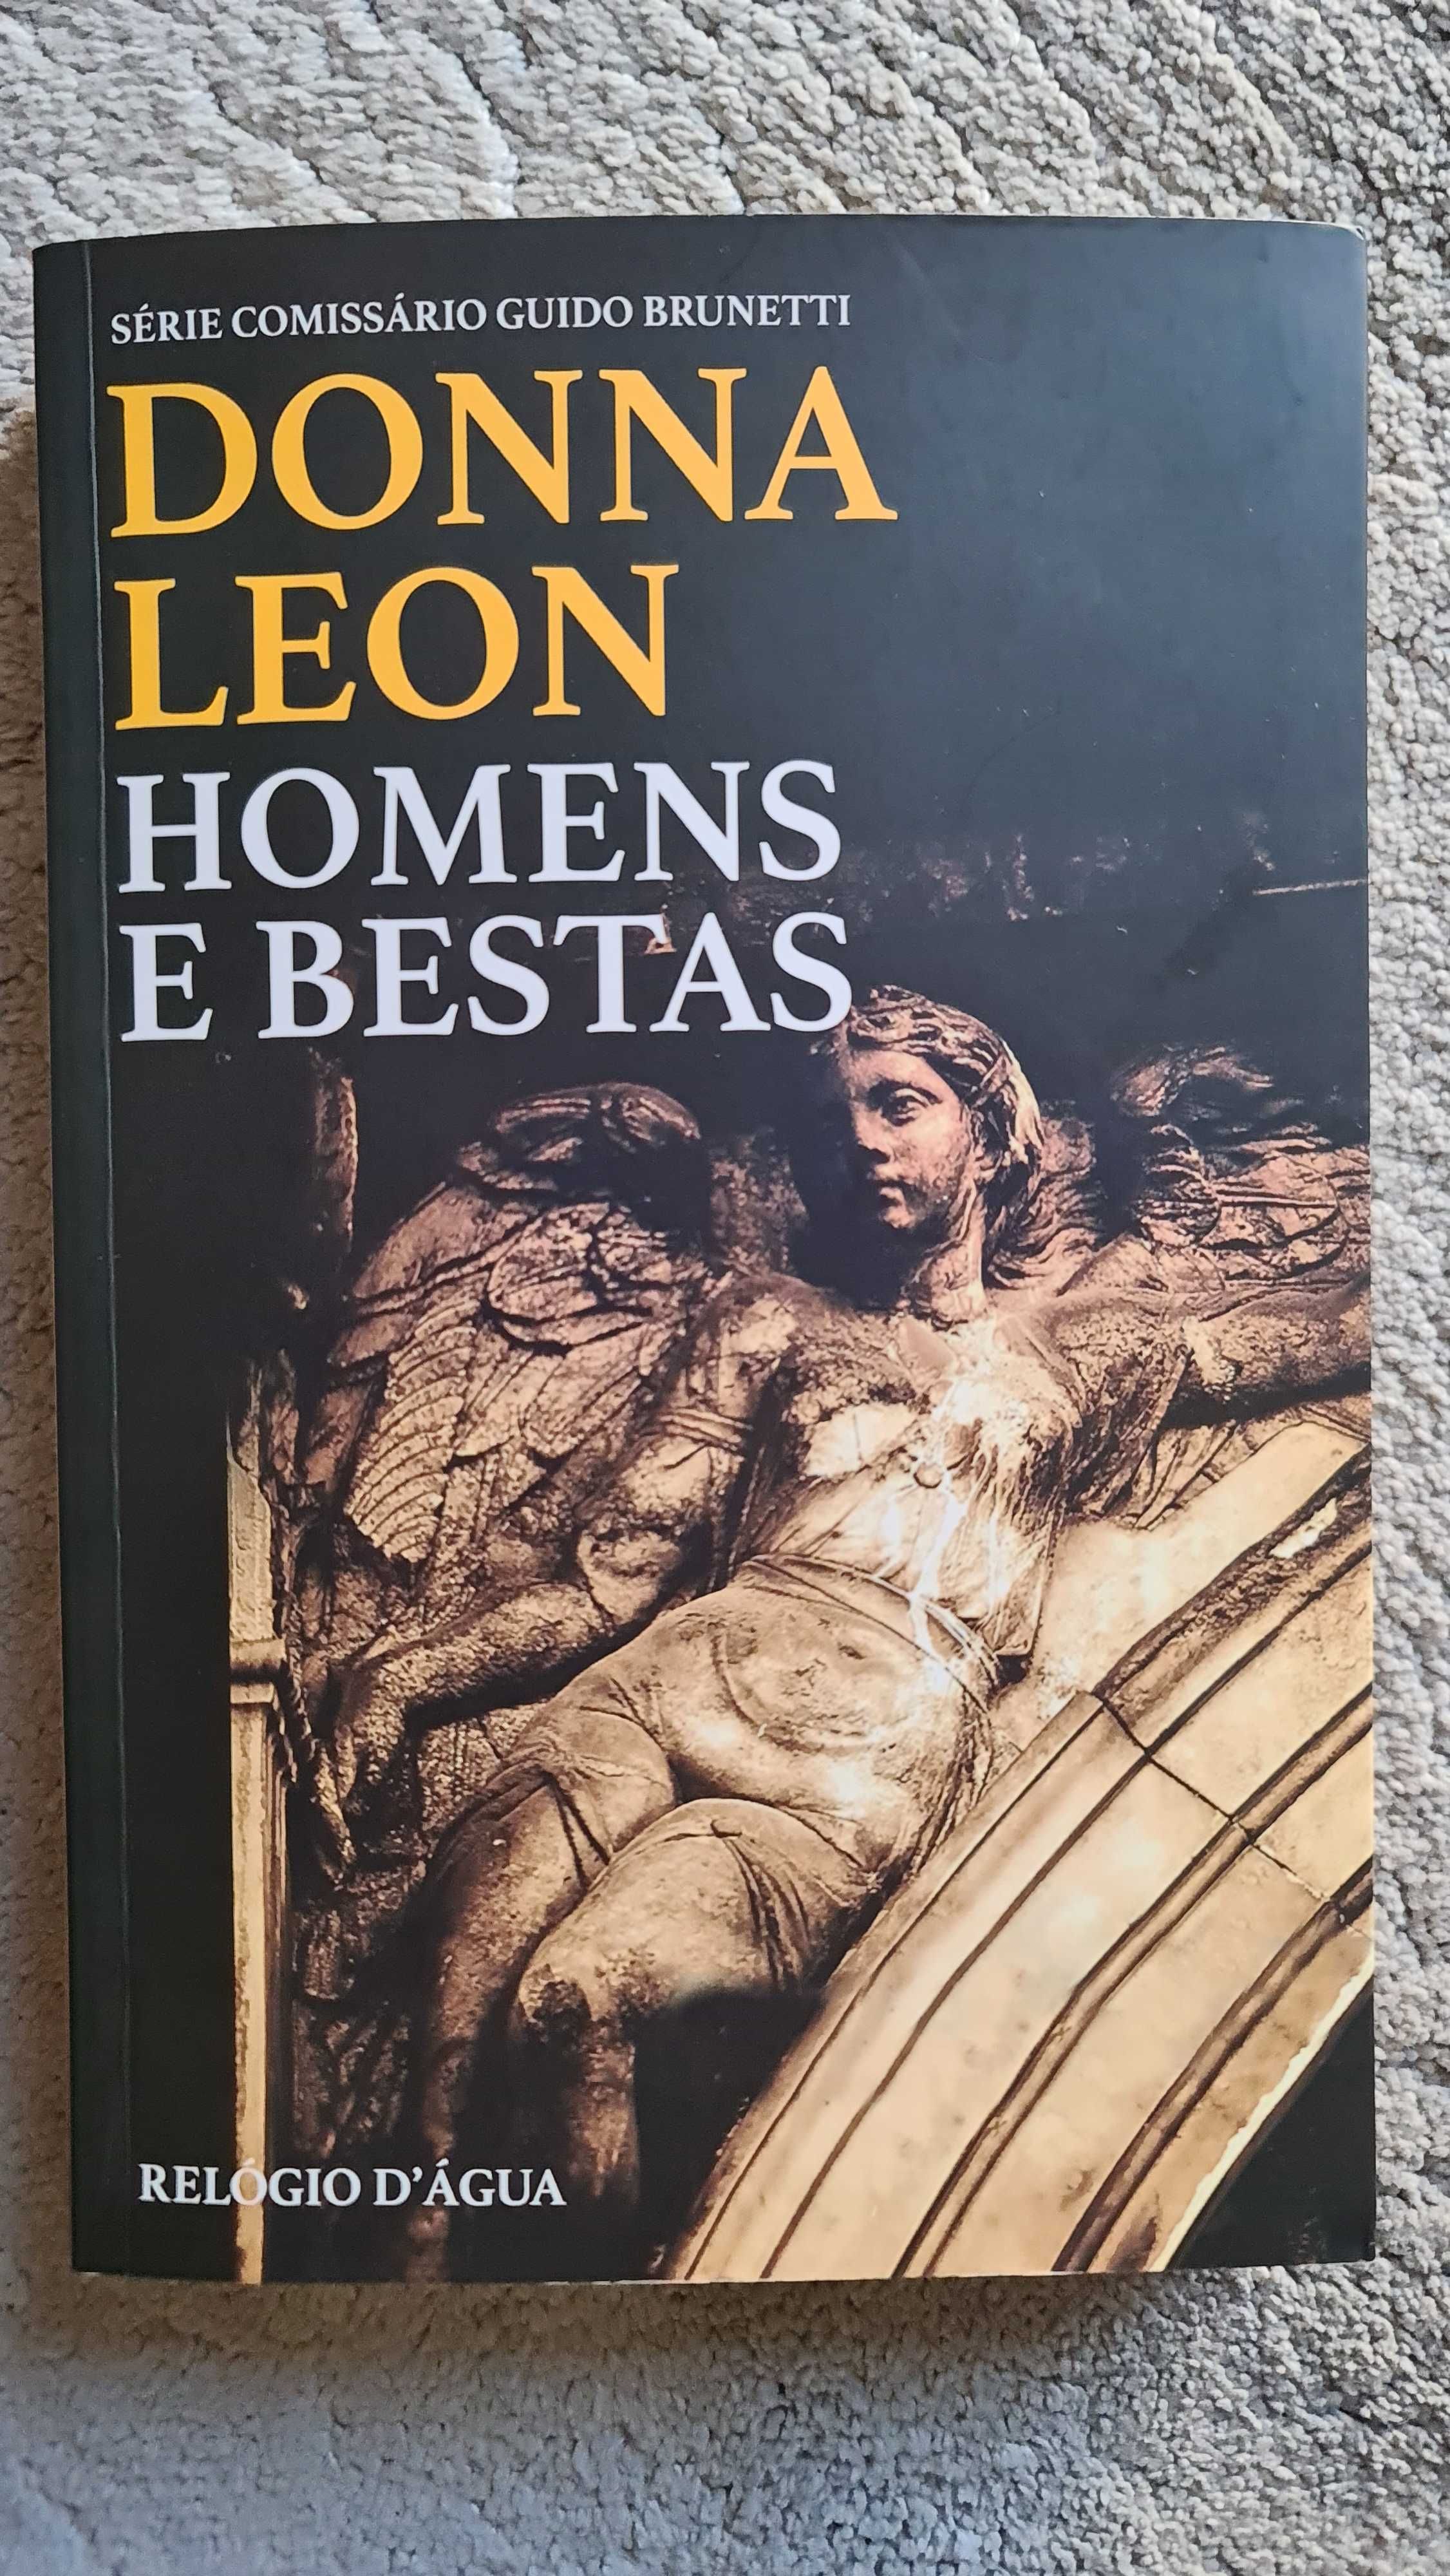 Vendo Livro de Donna Leon - Homens e Bestas